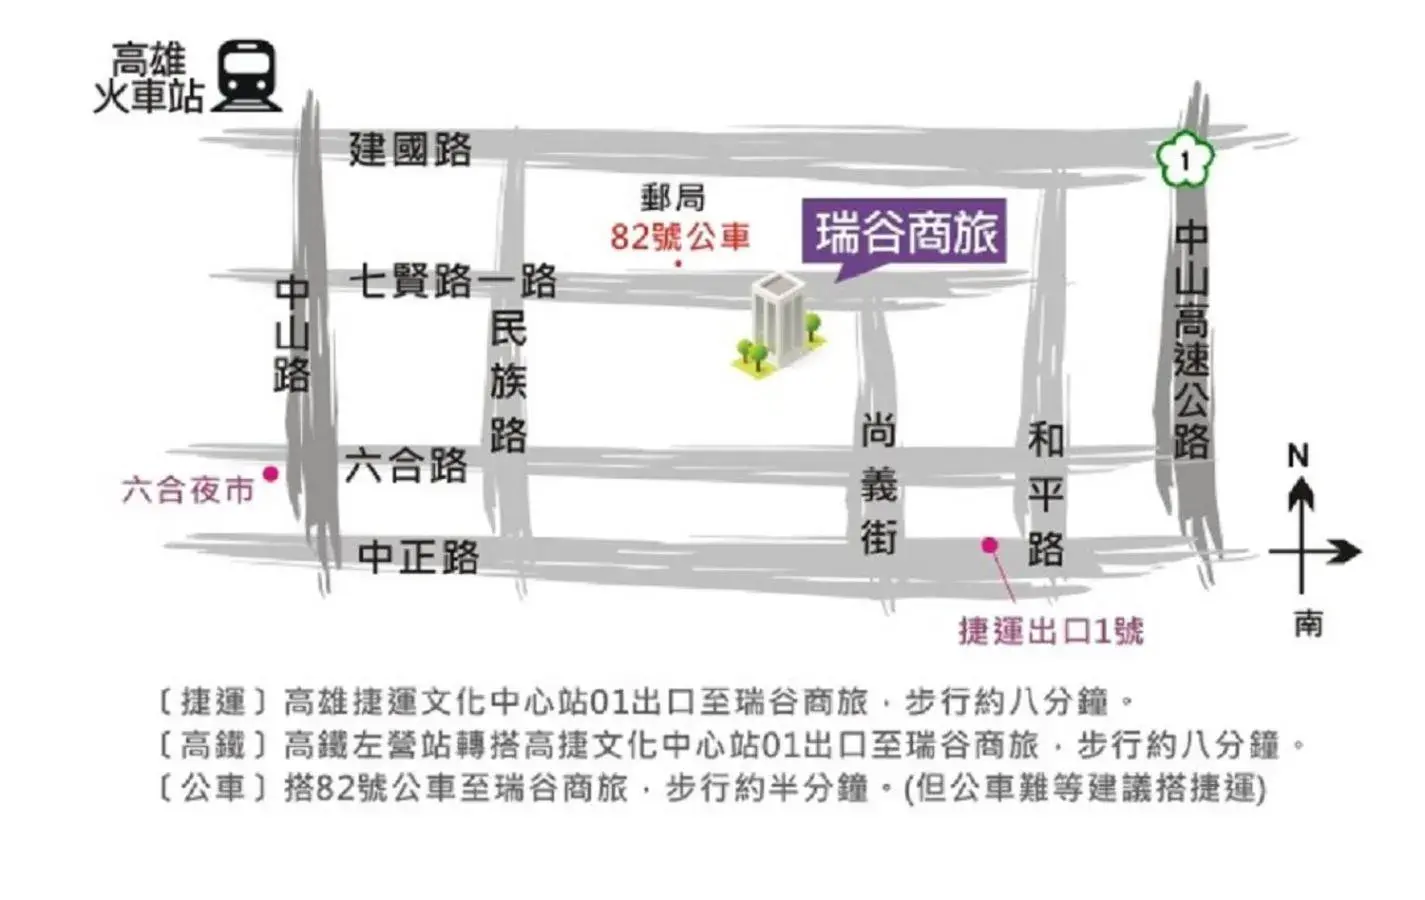 Street view, Floor Plan in Rui Gu Hotel